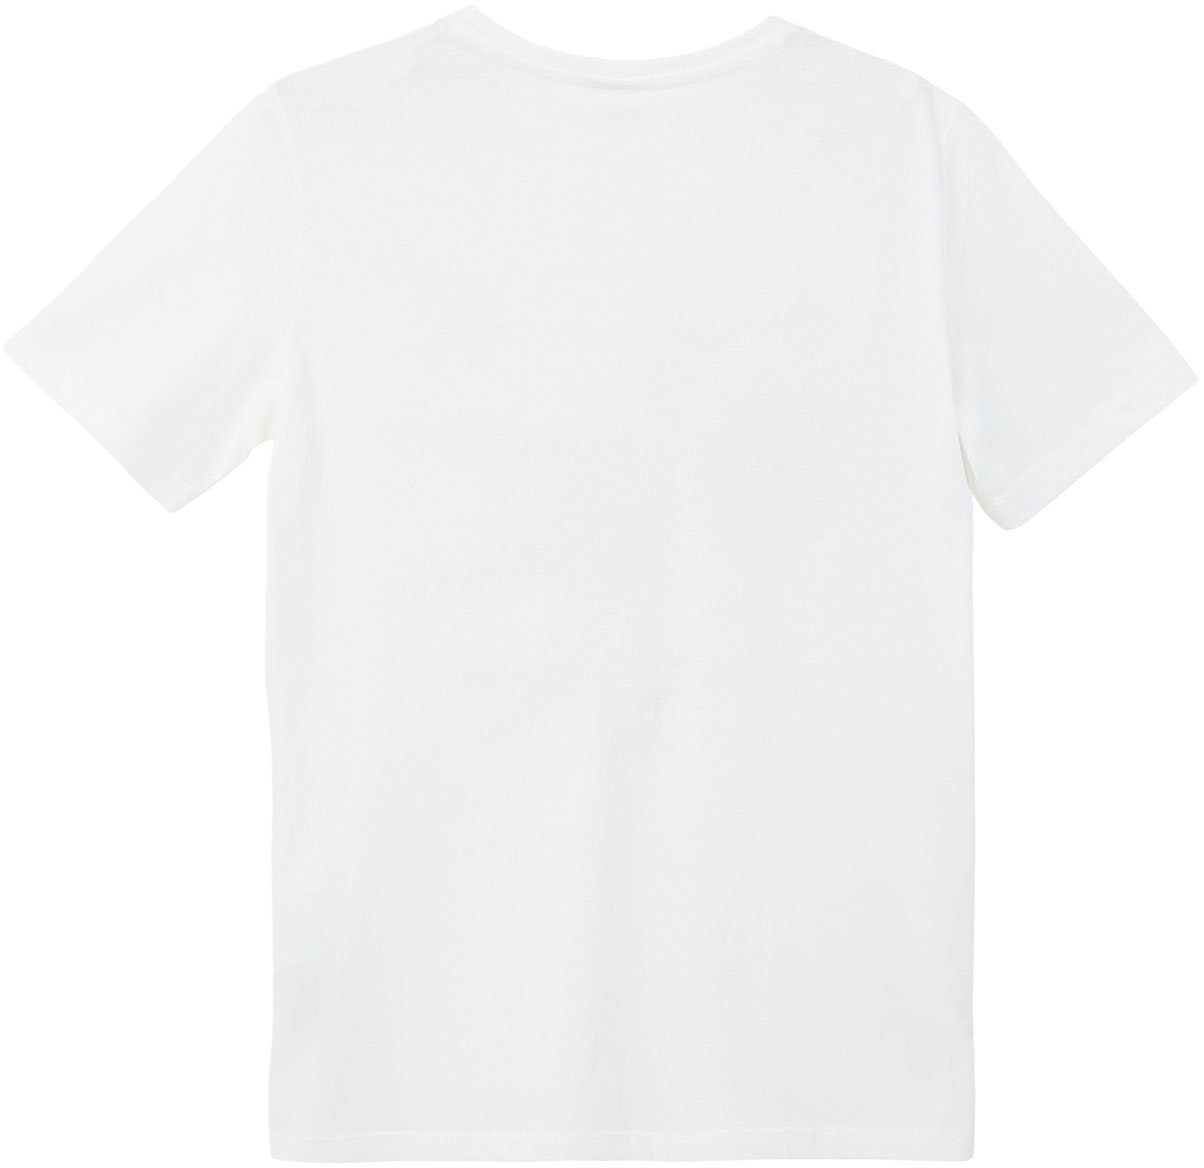 s.Oliver T-Shirt Junior white mit Print